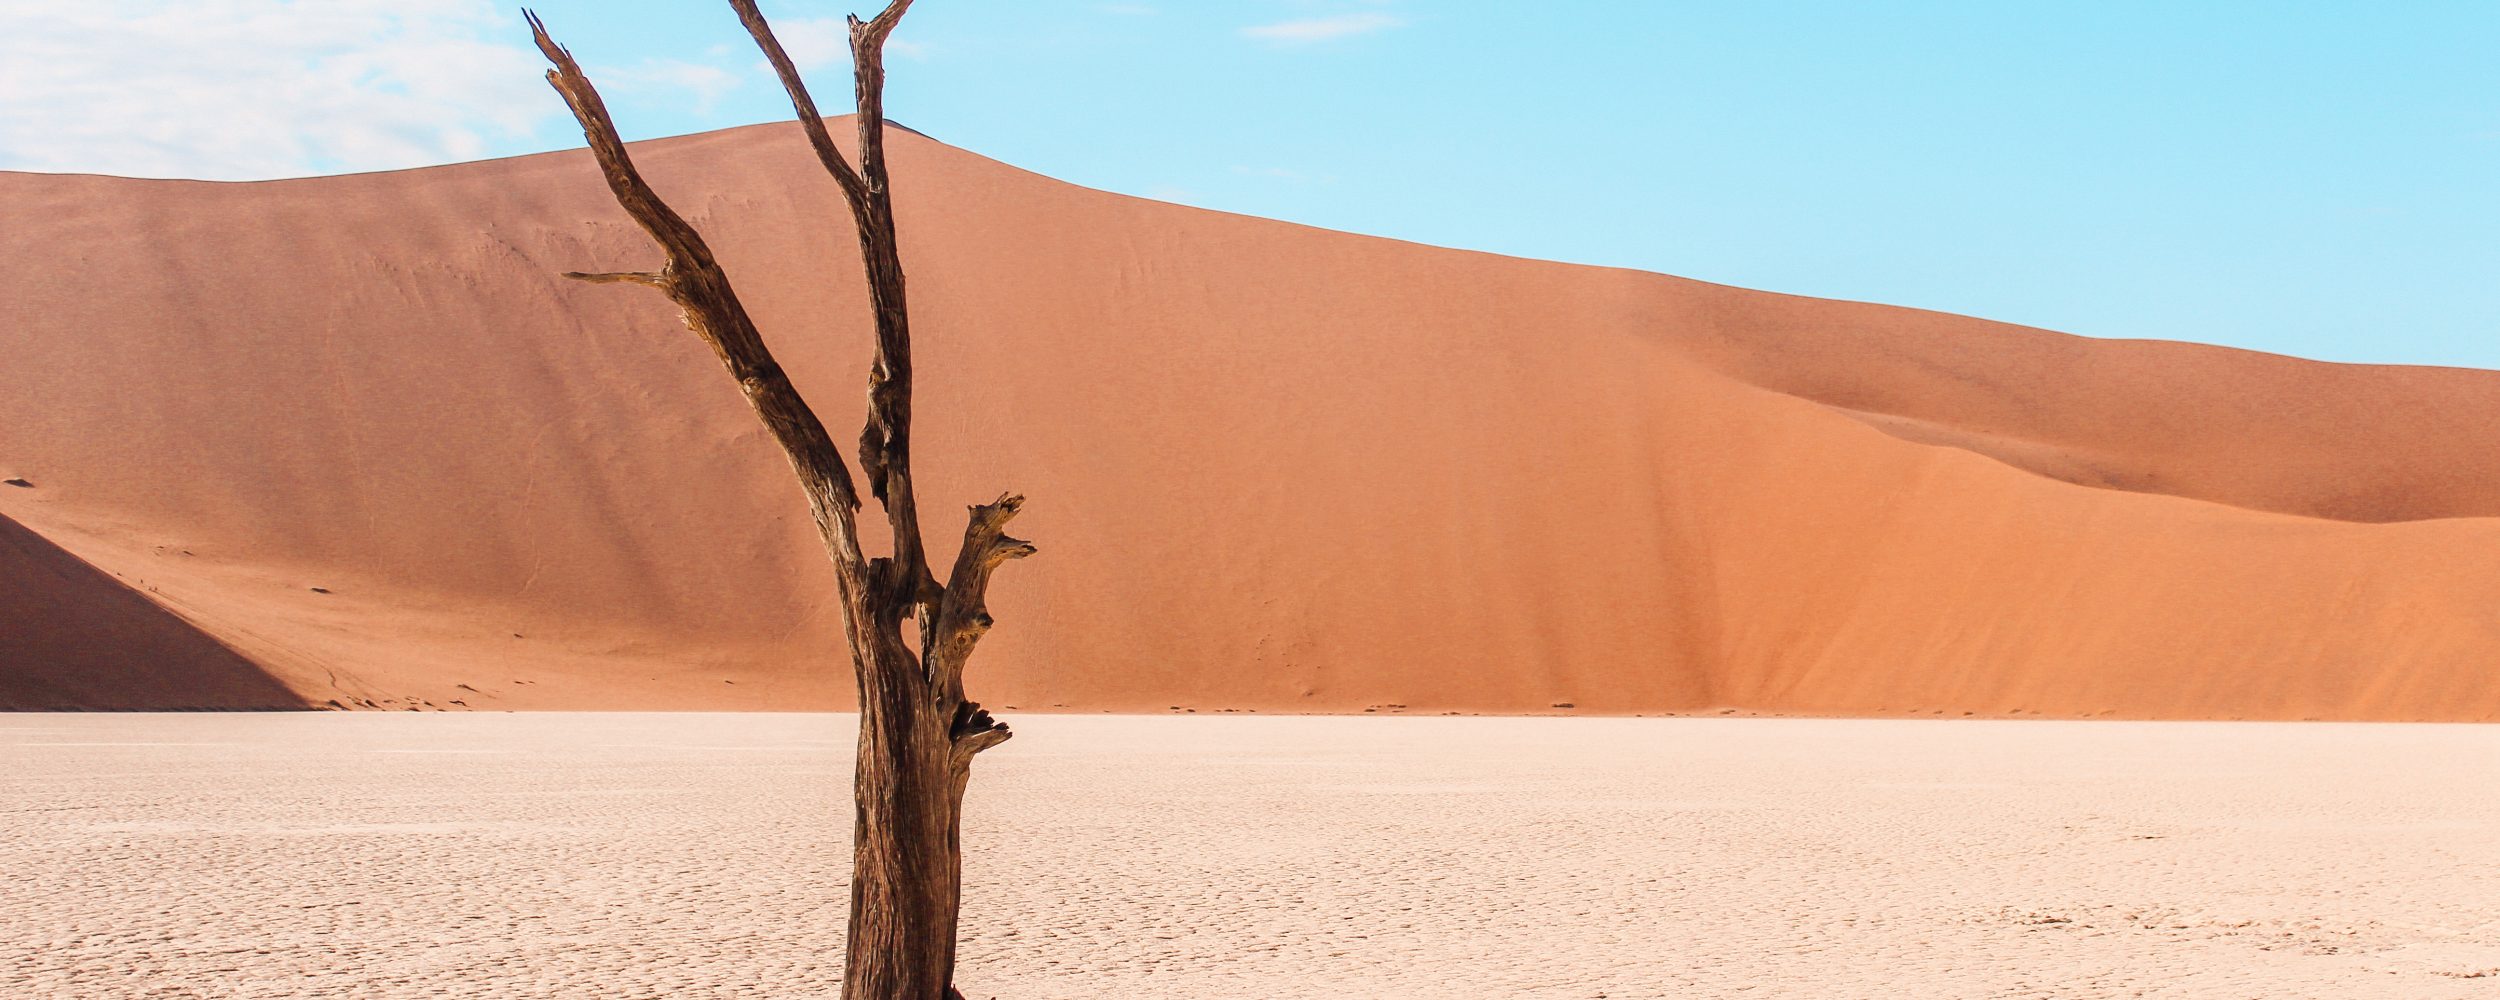 ナミビアの砂漠の砂